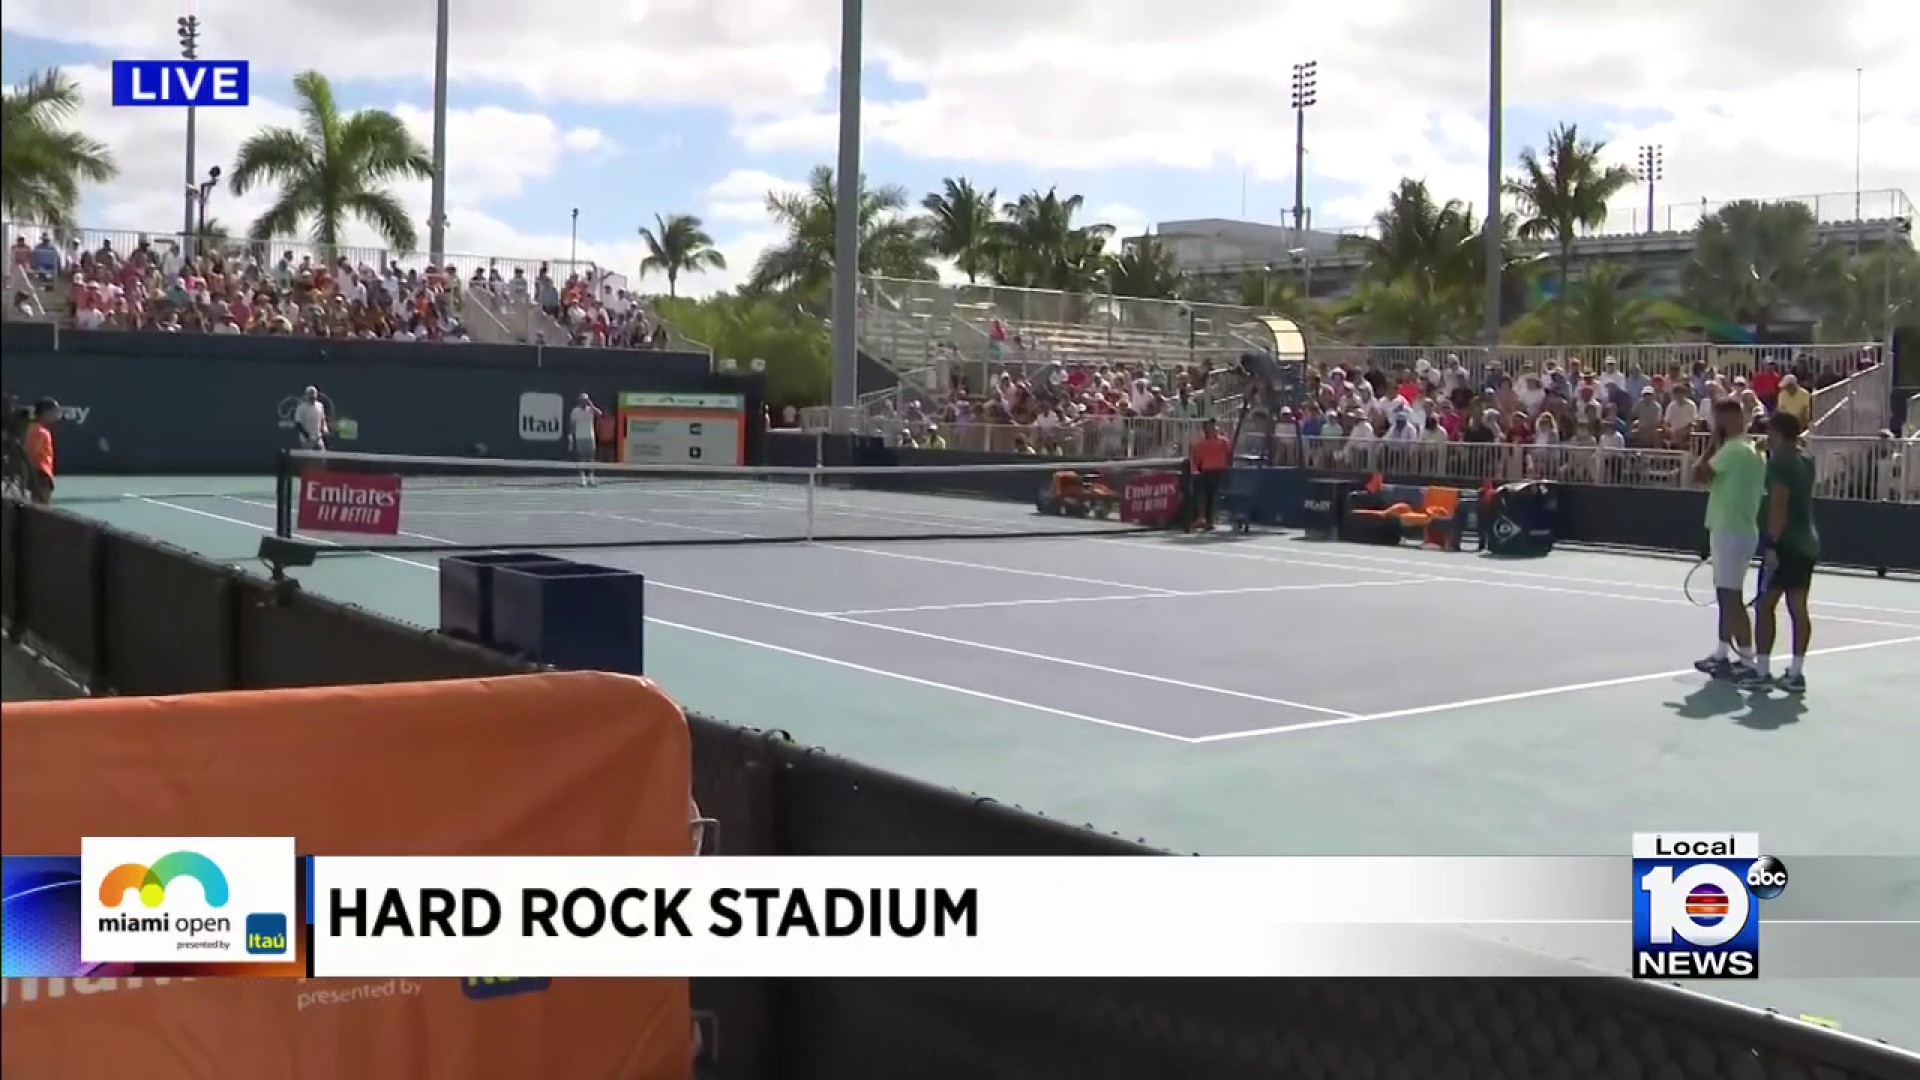 Thousands gather as Miami Open returns to Hard Rock Stadium